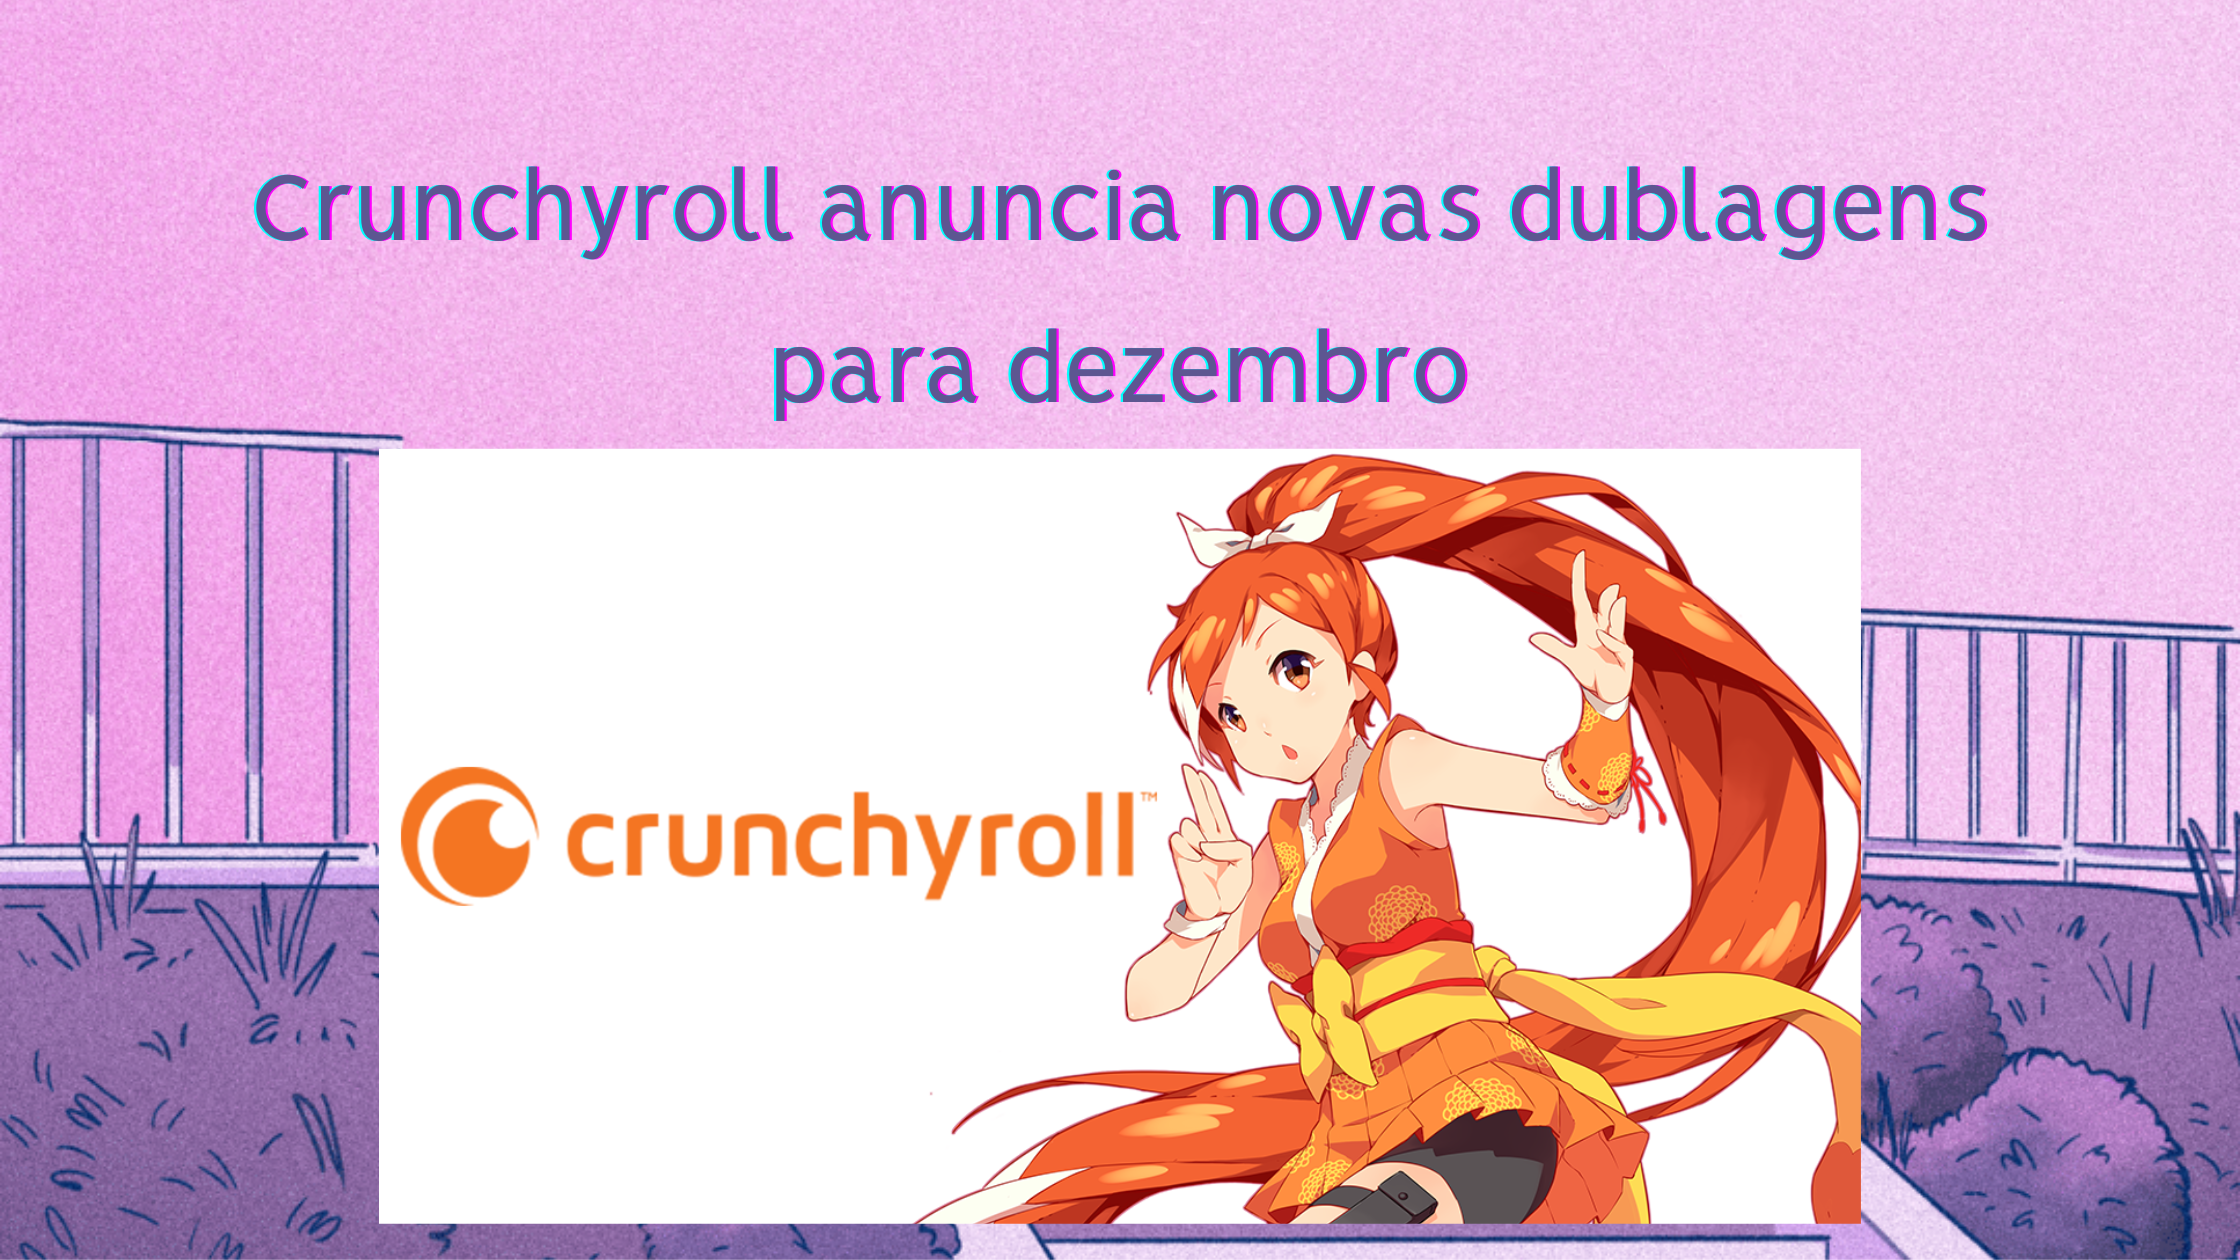  Crunchyroll anuncia novos animes dublados em